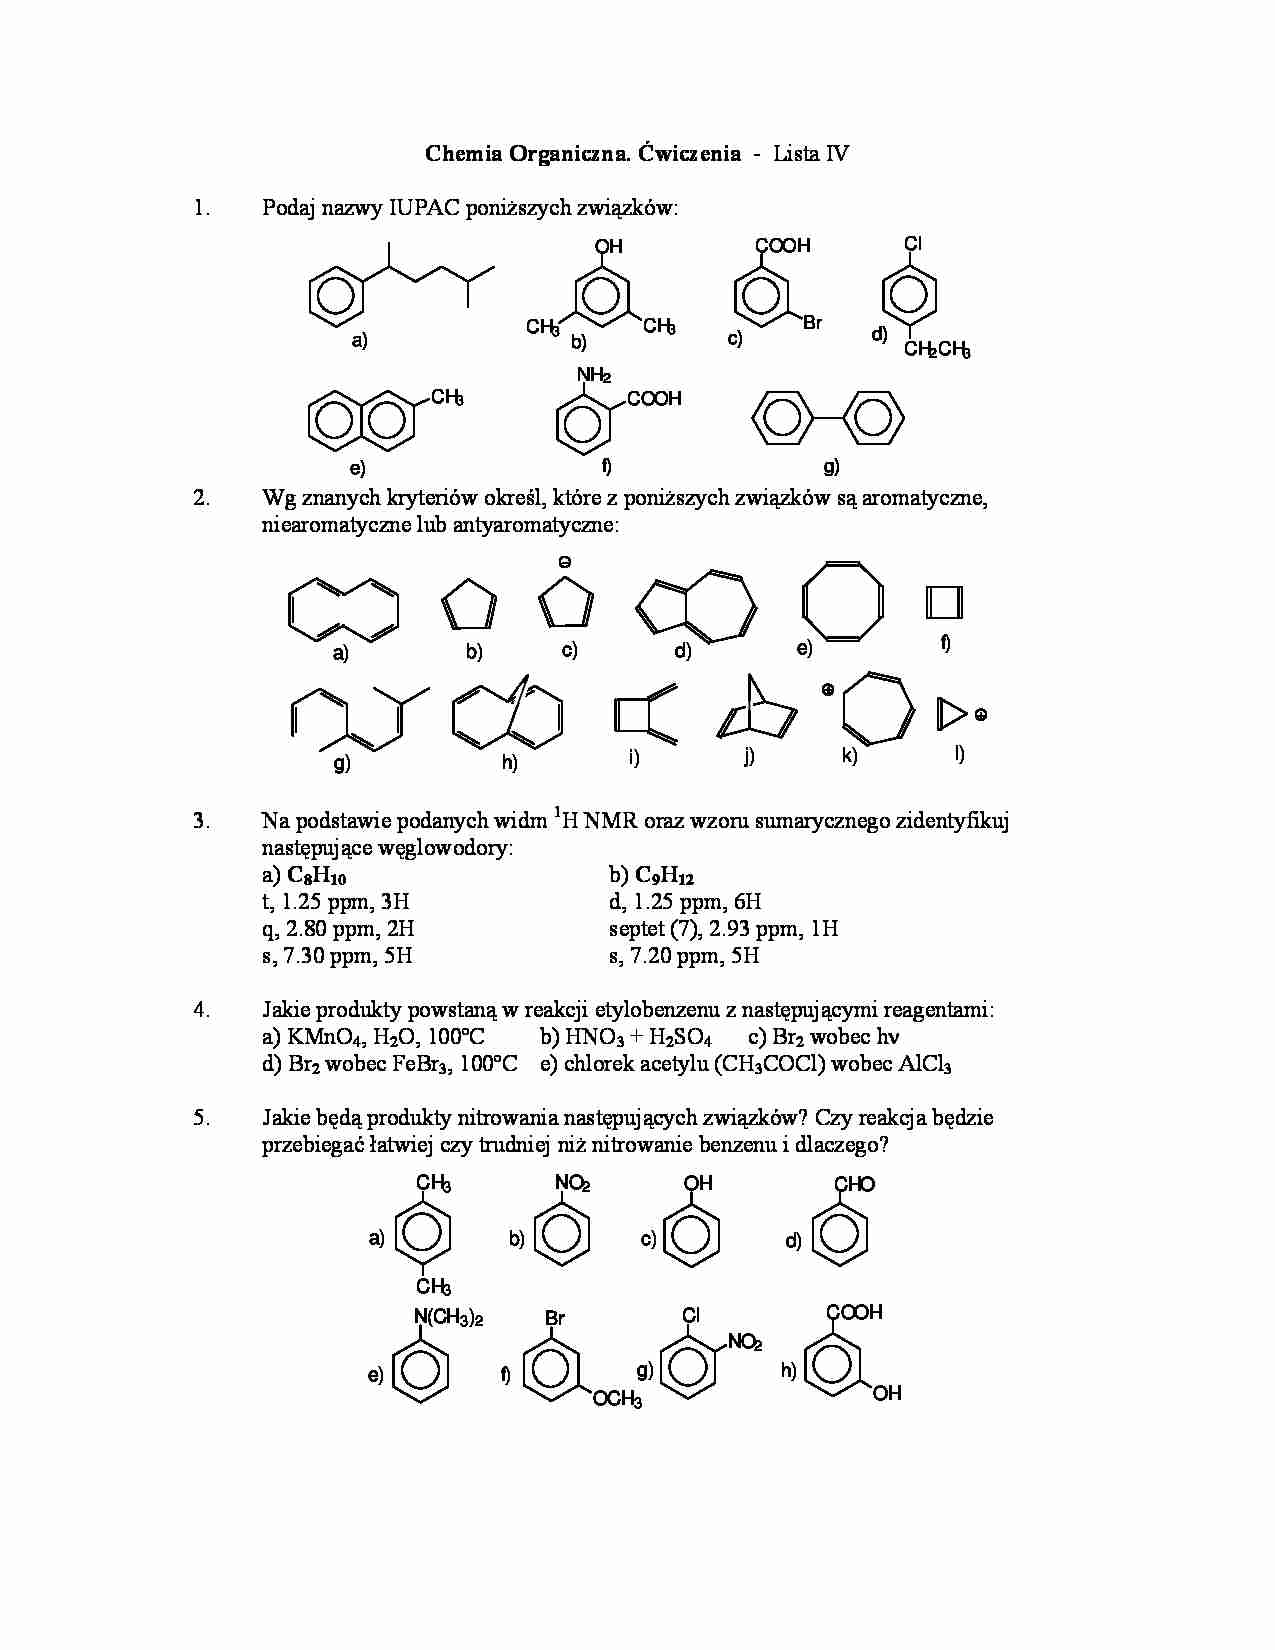 Chemia organiczna - ćwiczenia, lista IV - strona 1